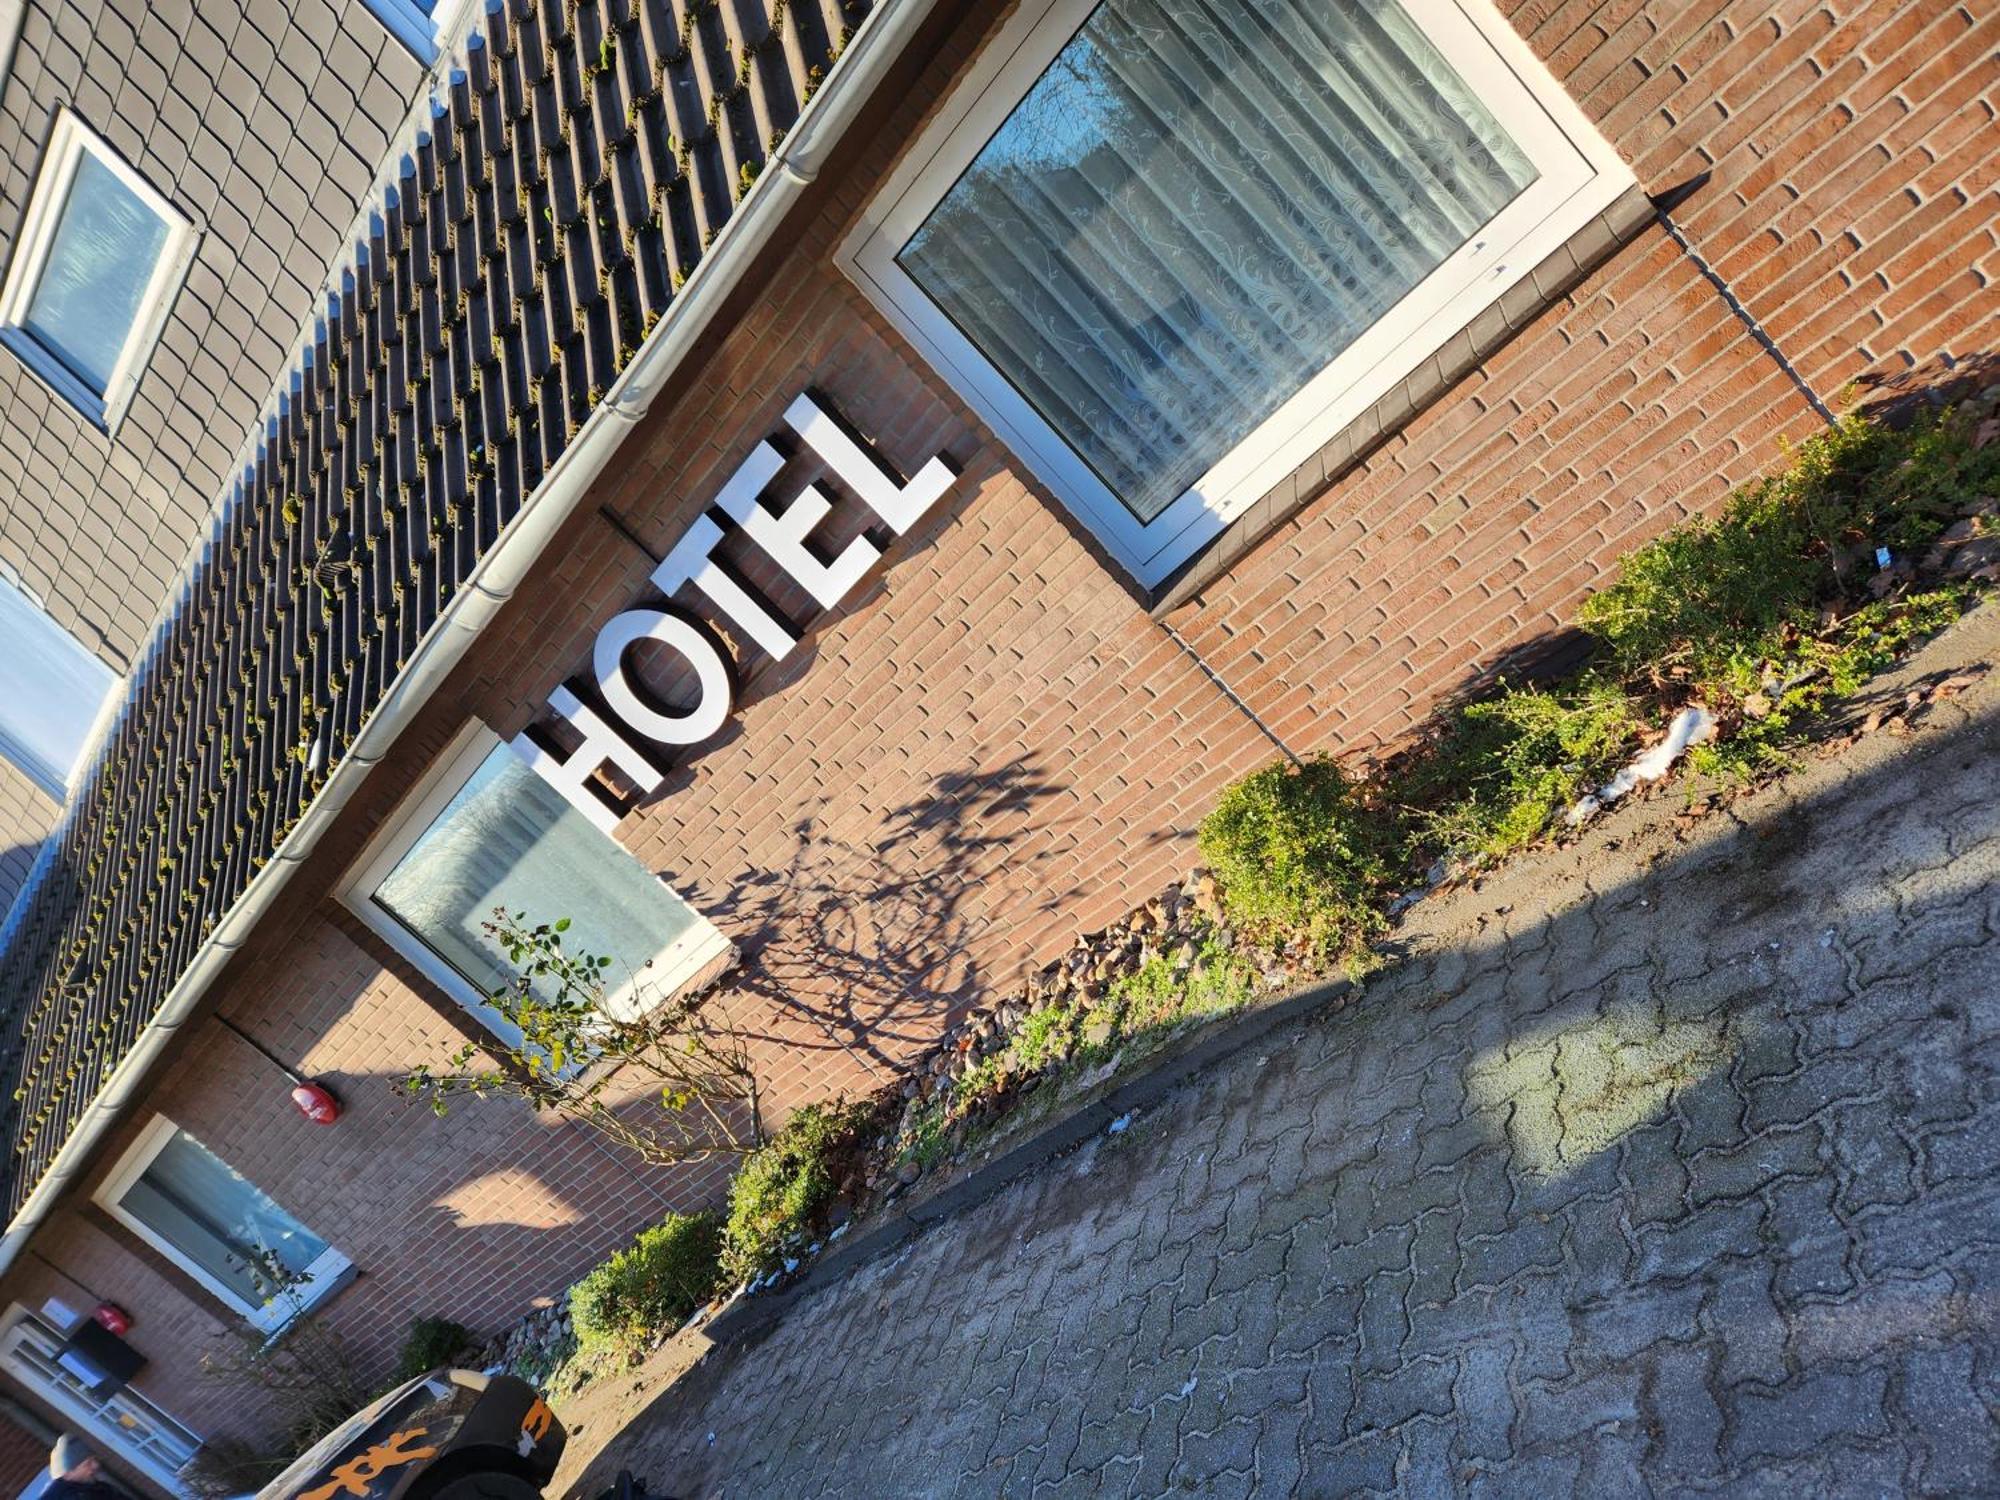 Hotel Heidekrug In Pinneberg Appen 外观 照片